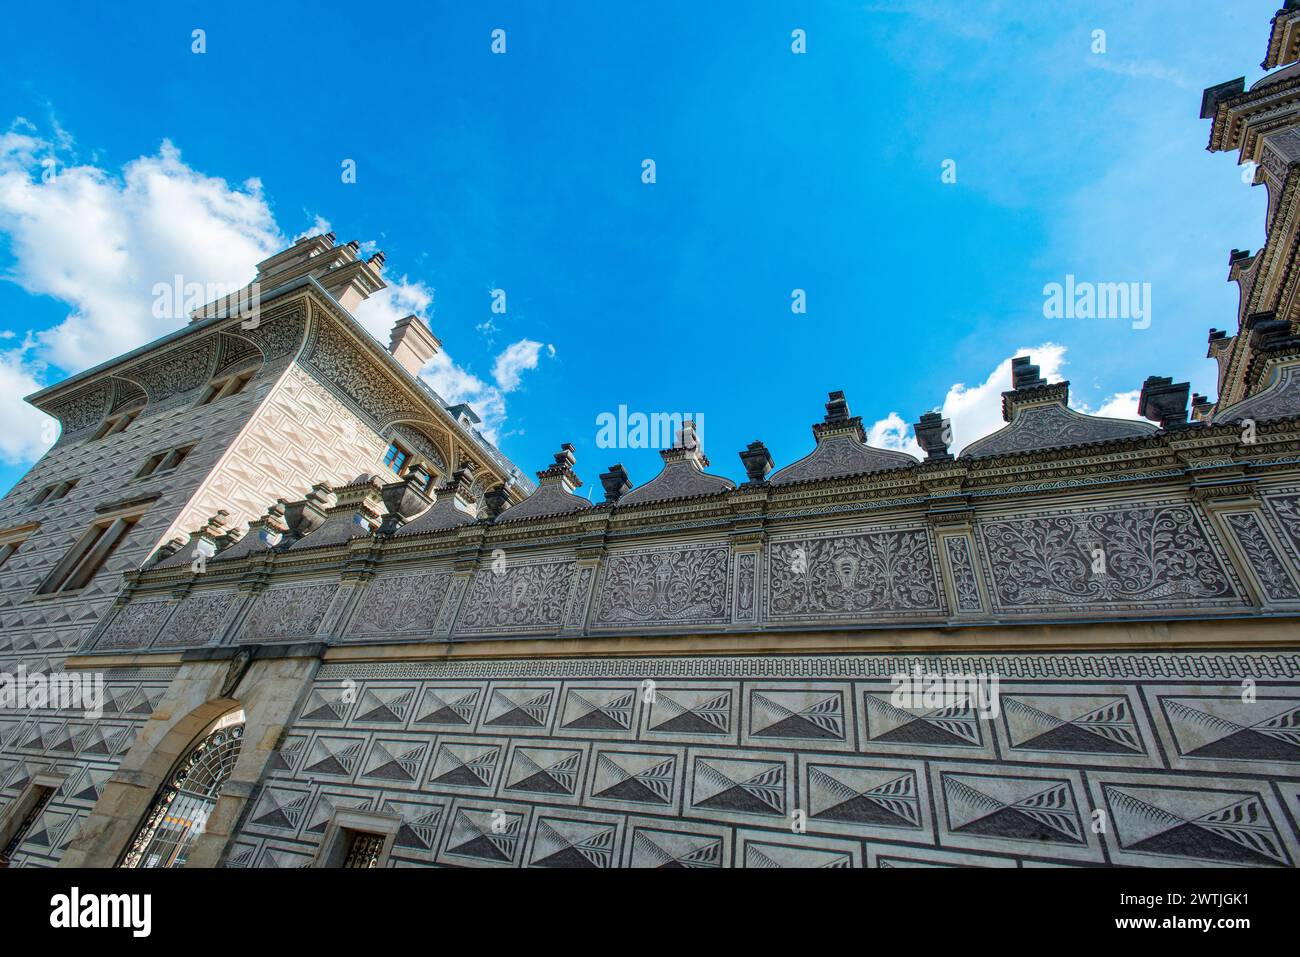 Moastery carmelitana a Palazzo Schwarzenberg il Castello di Praga, Repubblica Ceca Foto Stock